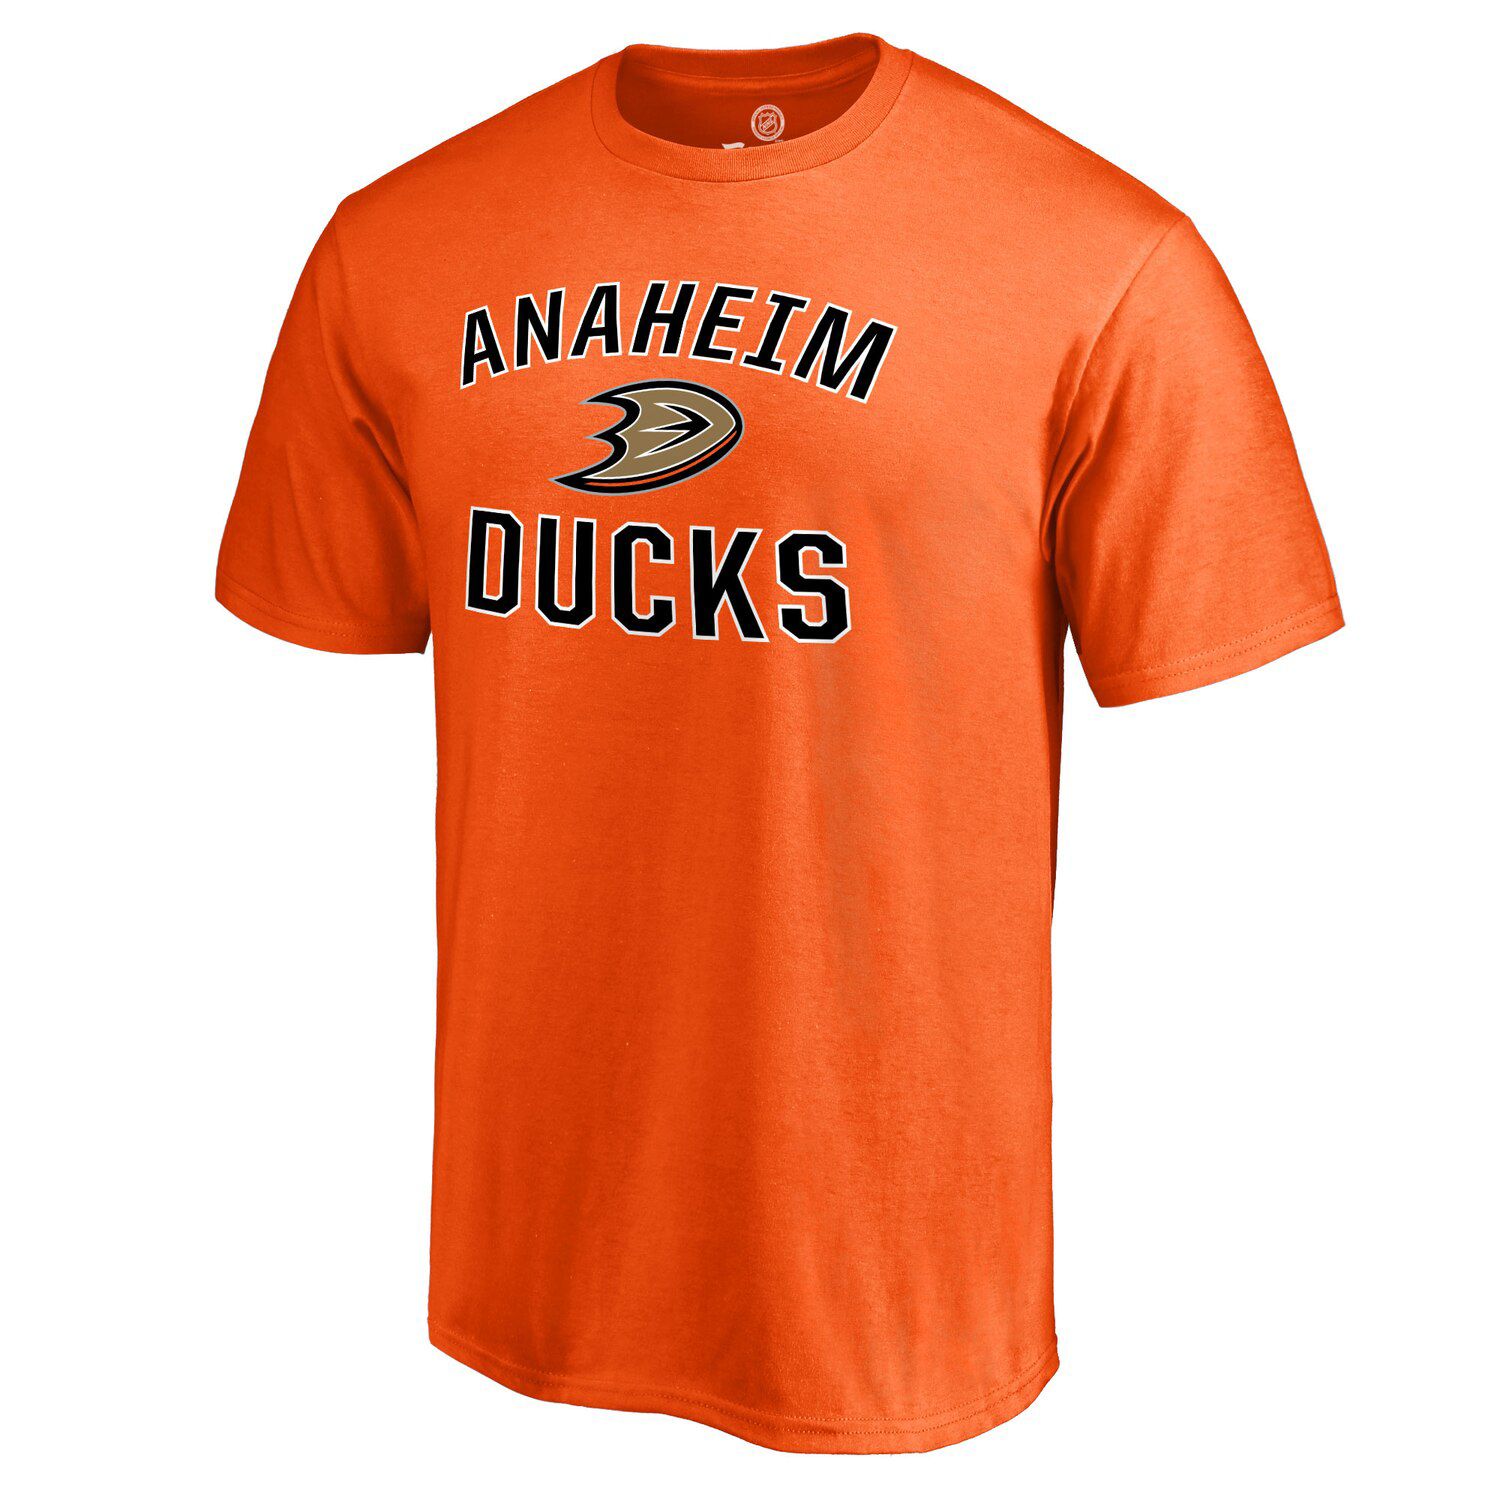 anaheim ducks orange shirt